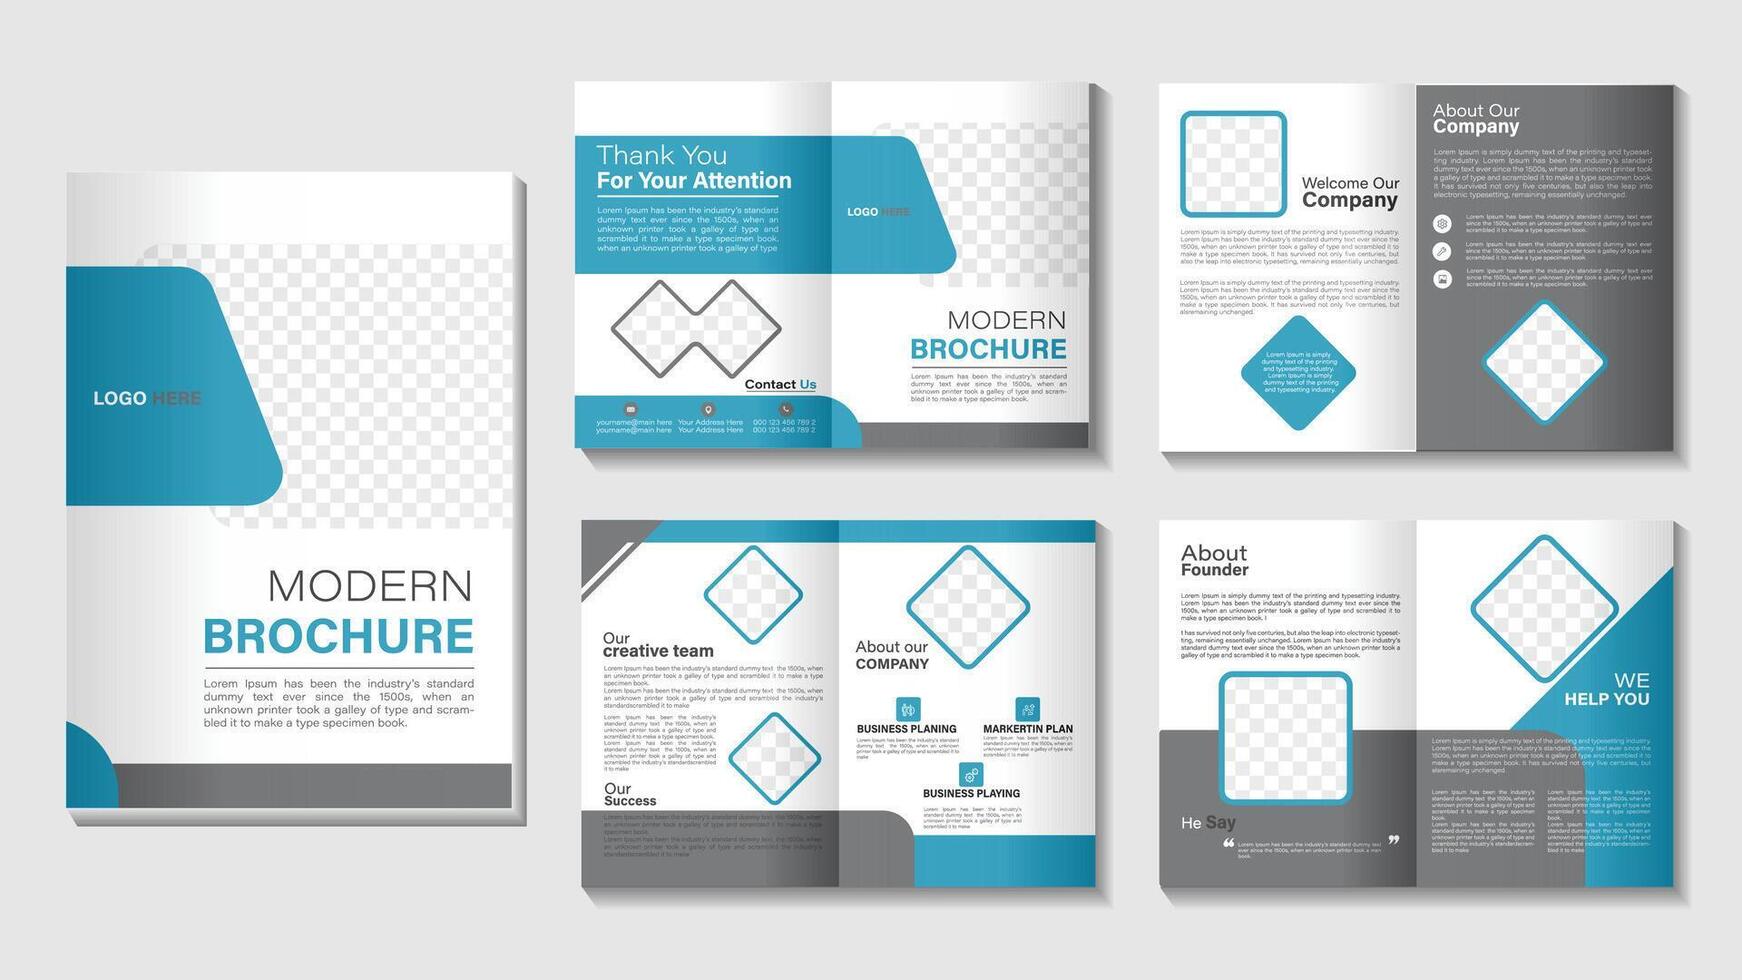 8 página empresa perfil folleto diseño vector